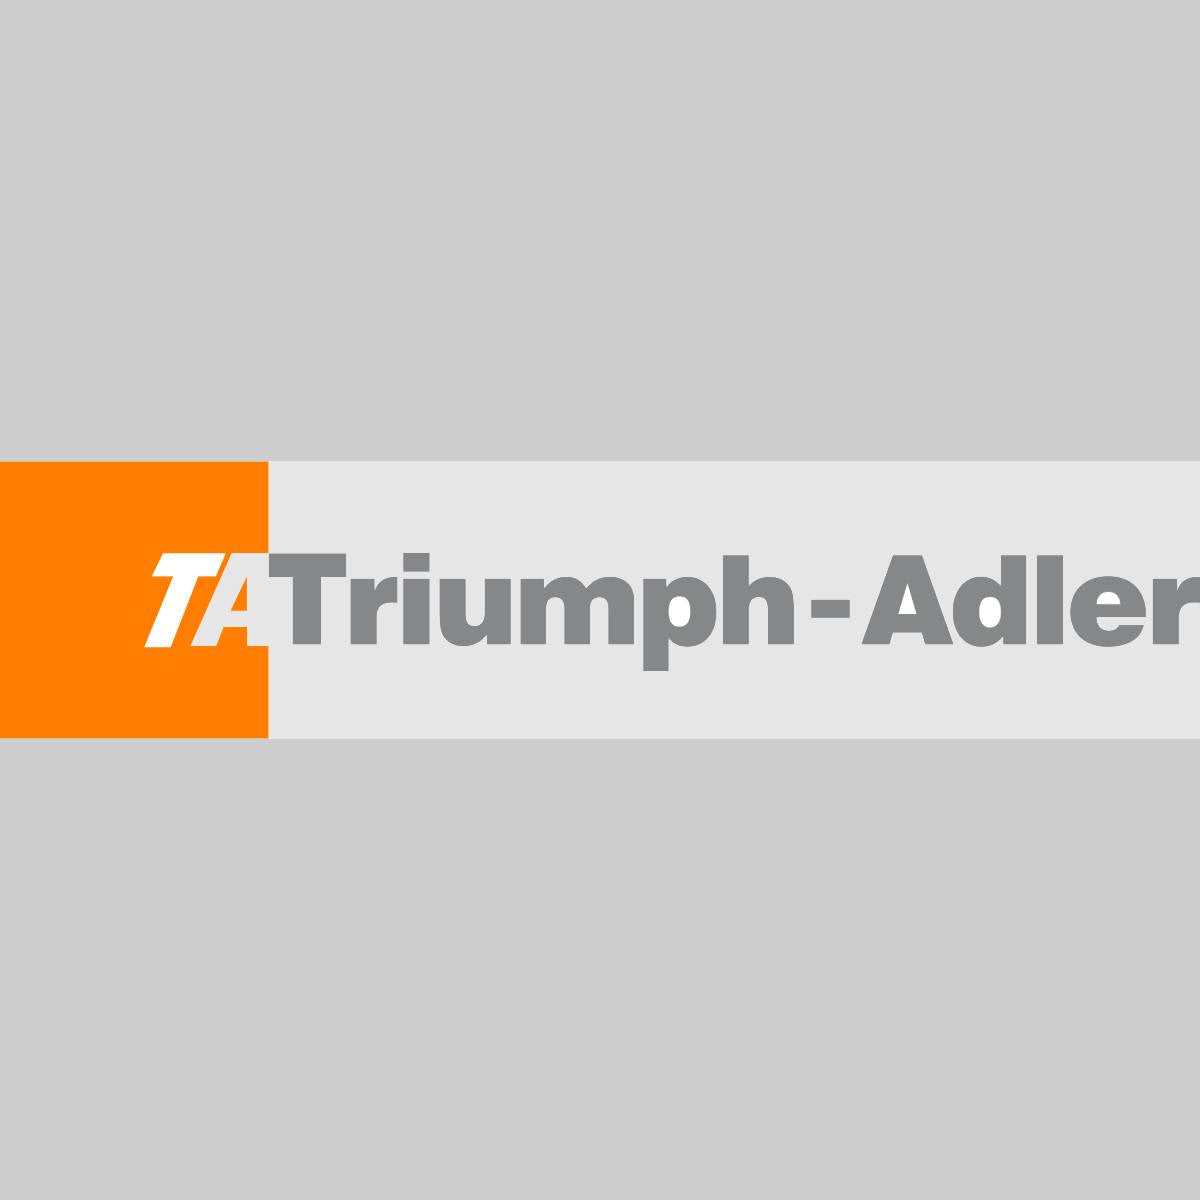 "Kit de copie d'origine Triumph Adler Magenta 4431610114 pour CLP 4300Series 4316 4316